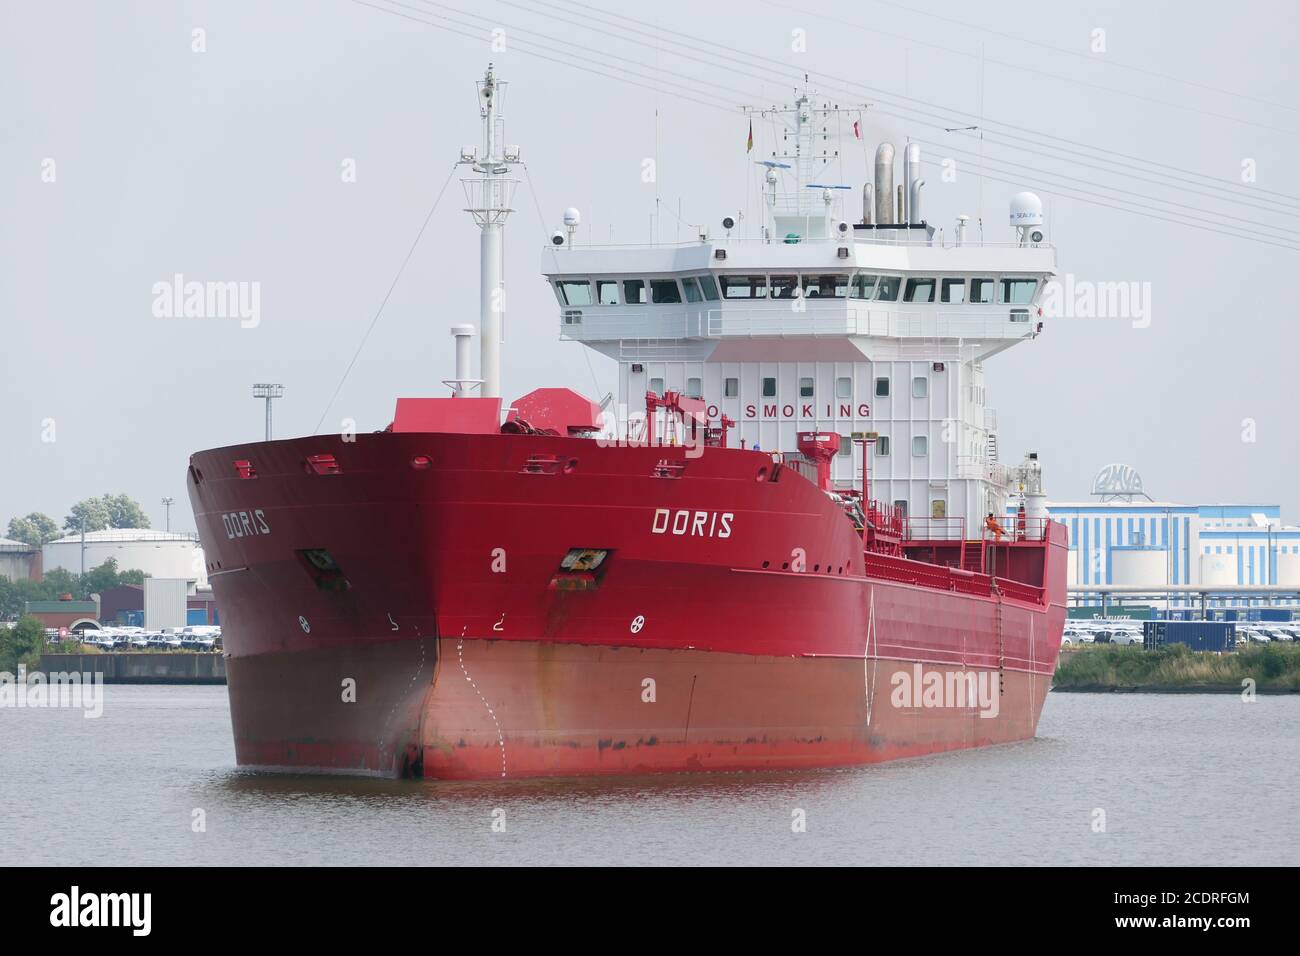 The tanker Doris will leave the port of Emden on August 1, 2020. Stock Photo